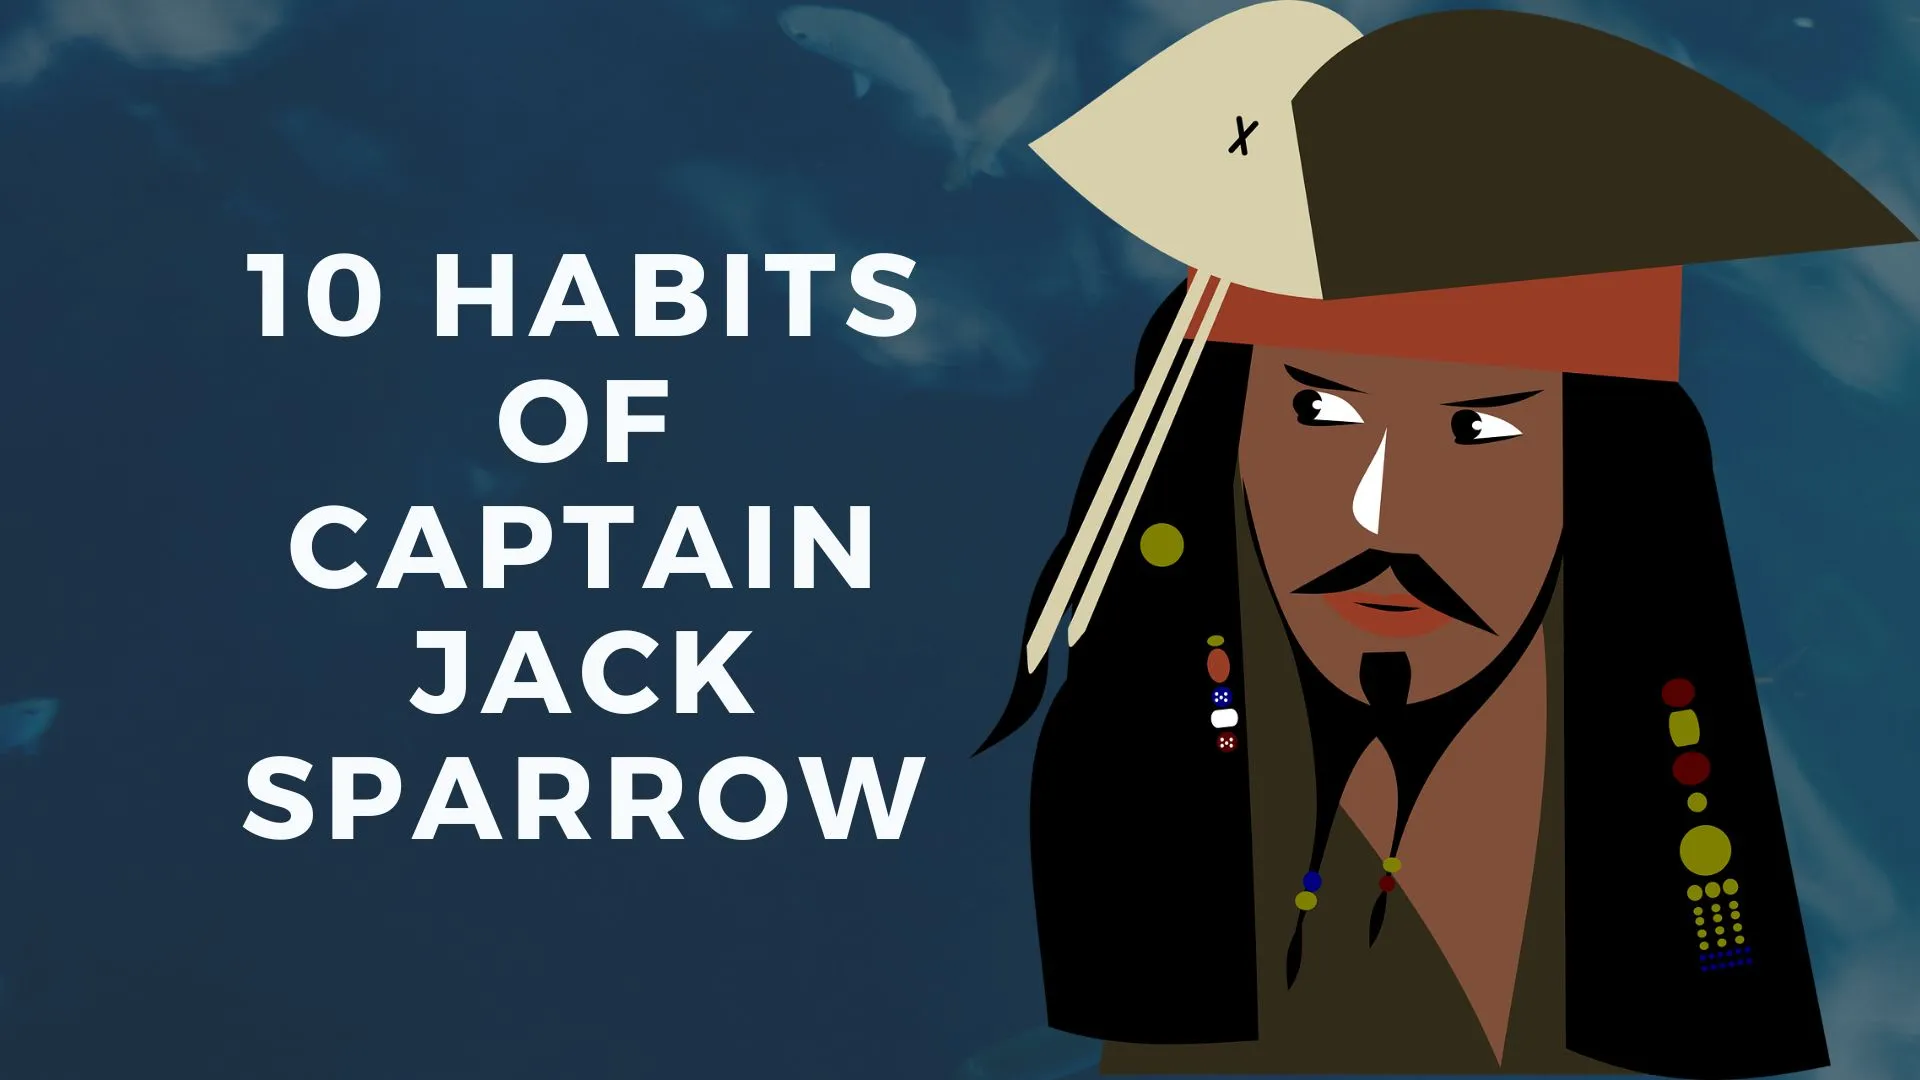 10 habits of captain jack sparrow